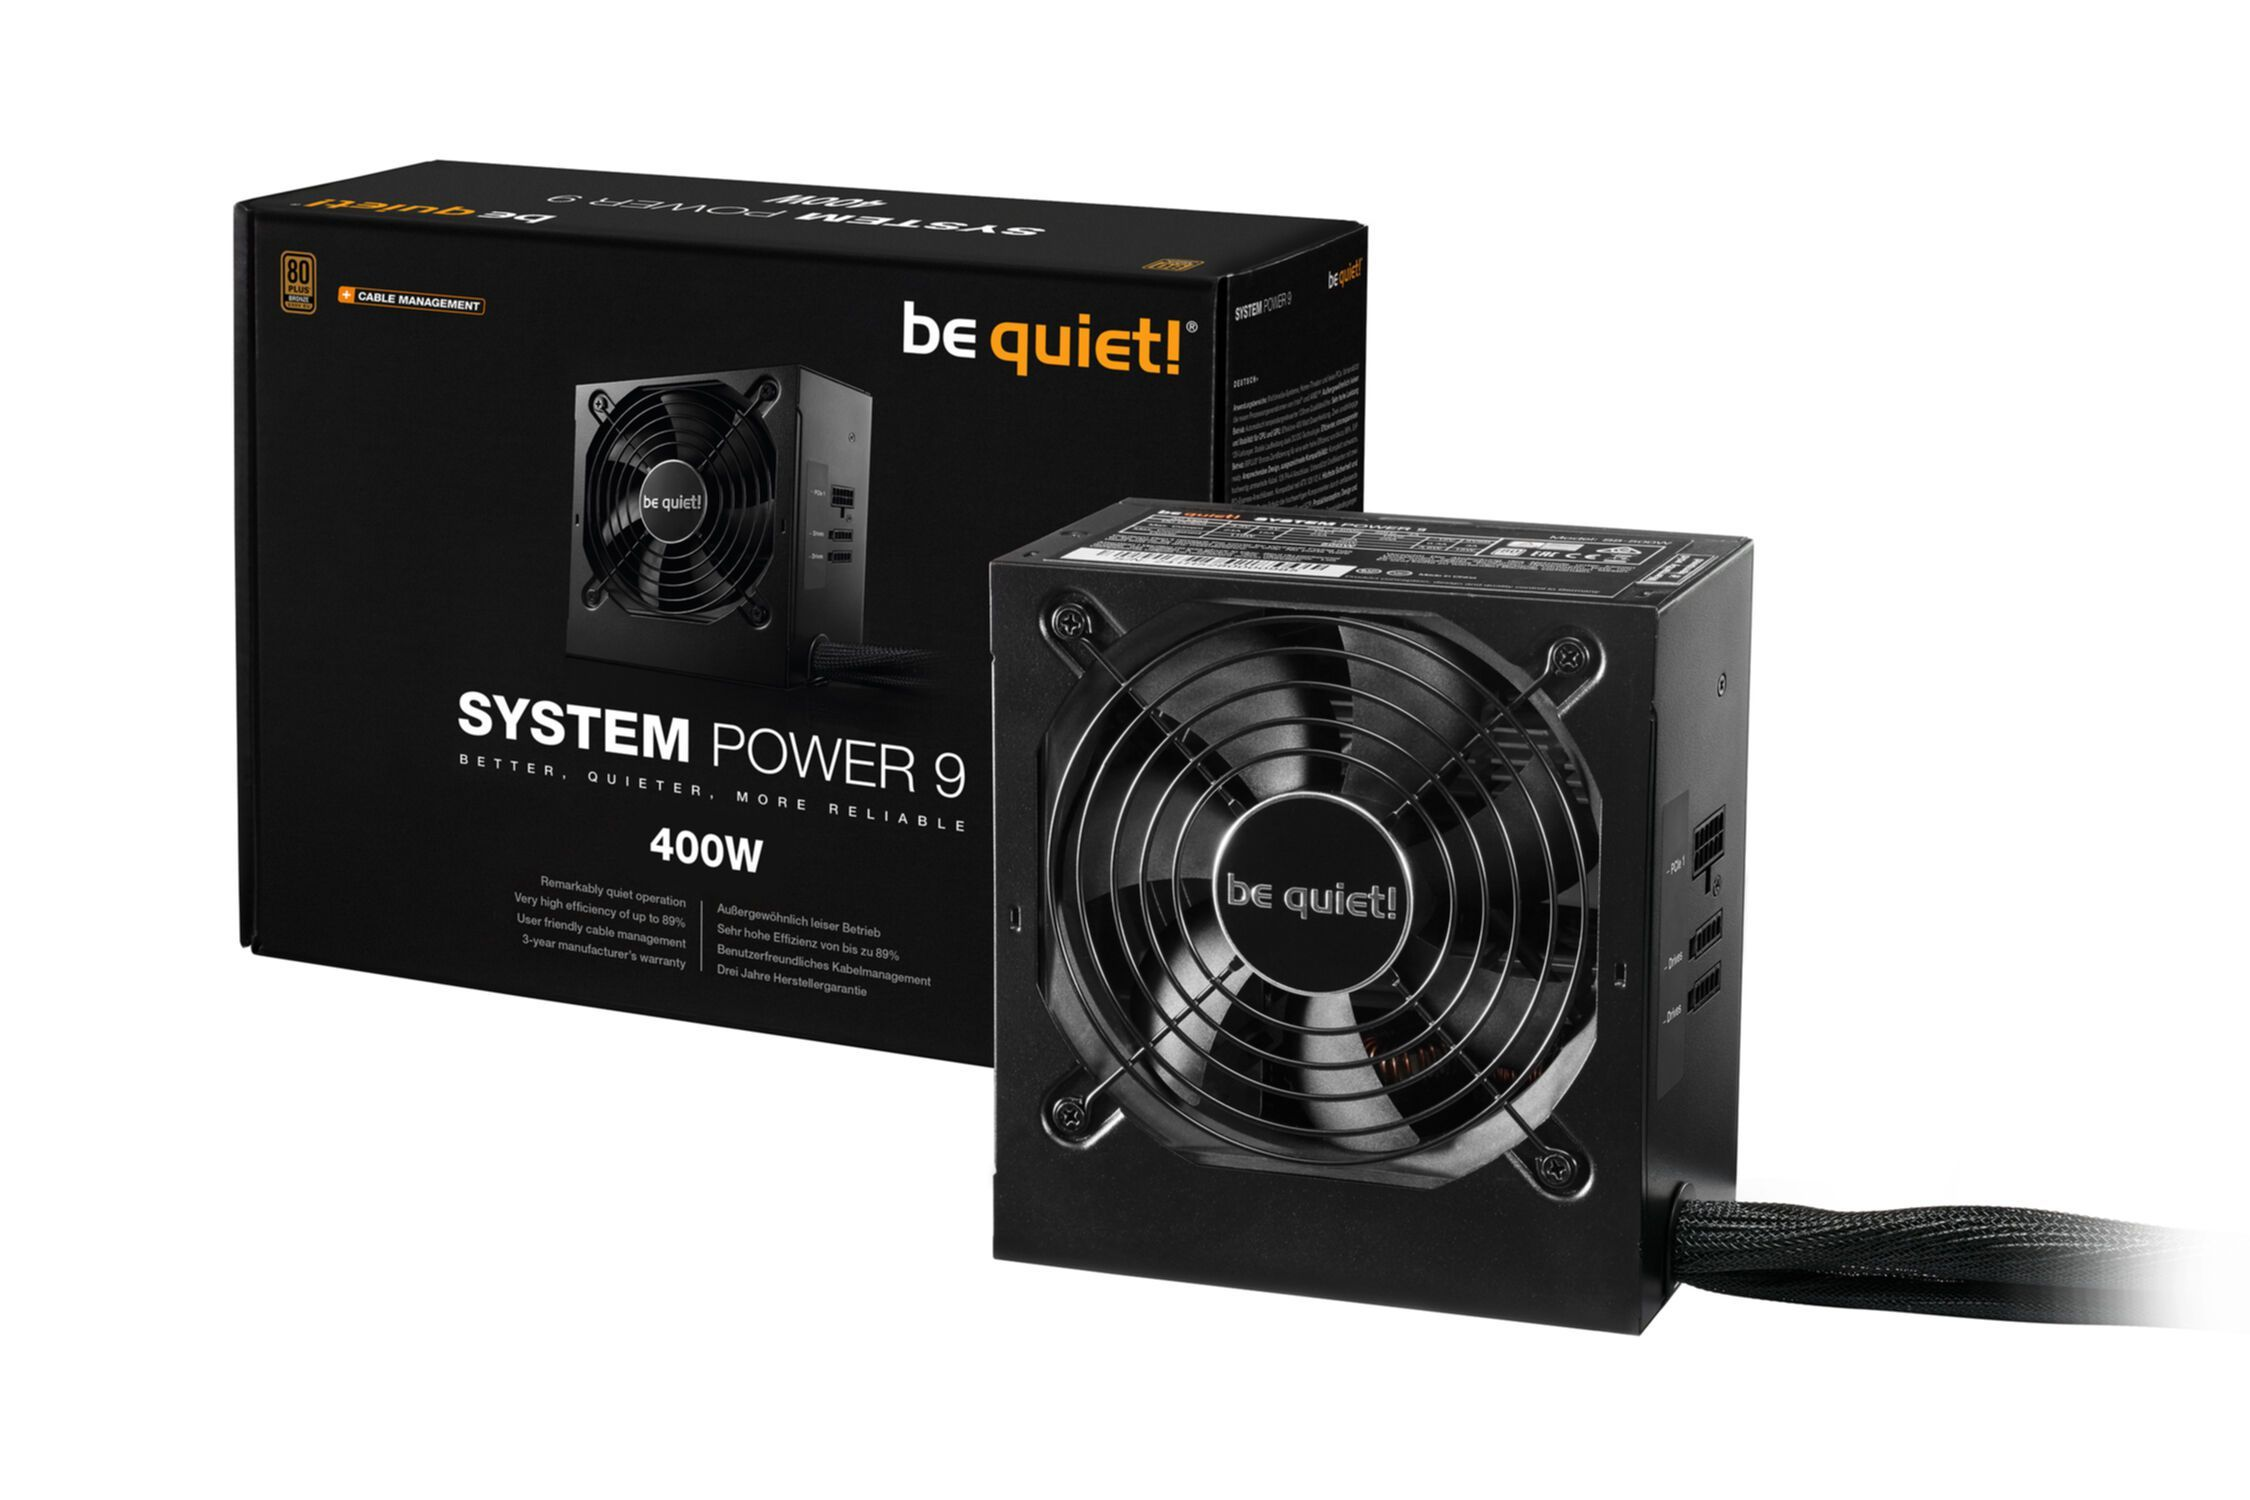 Power Watt Netzteil , 9 System 400W 400 PC BE QUIET! CM